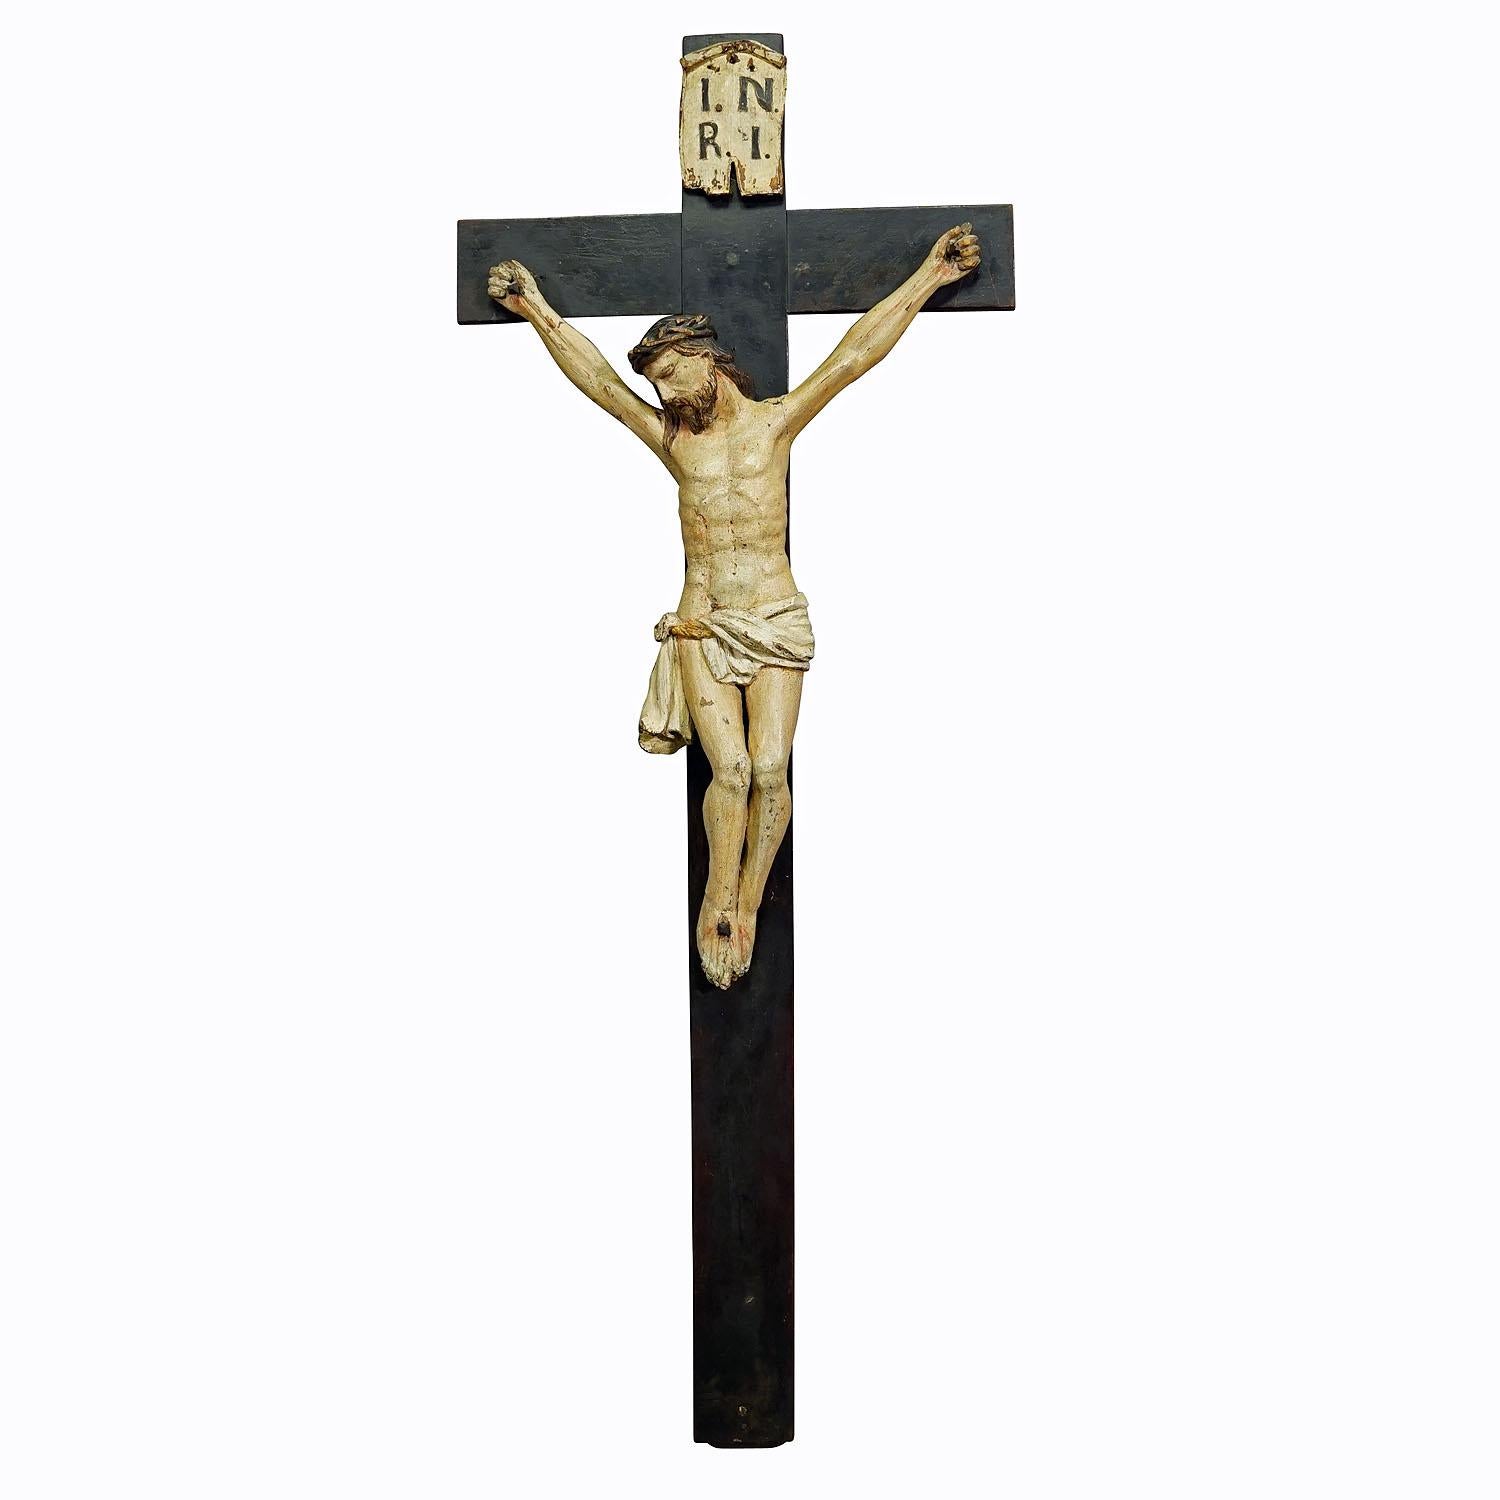 Crucifix bavarois du 19ème siècle en bois sculpté

Crucifix ancien avec une sculpture d'un Christ souffrant sur la croix, des détails étonnants sculptés à la main et une patine étonnante. Sculptée à la main en Bavière à la fin du 19e siècle. Le